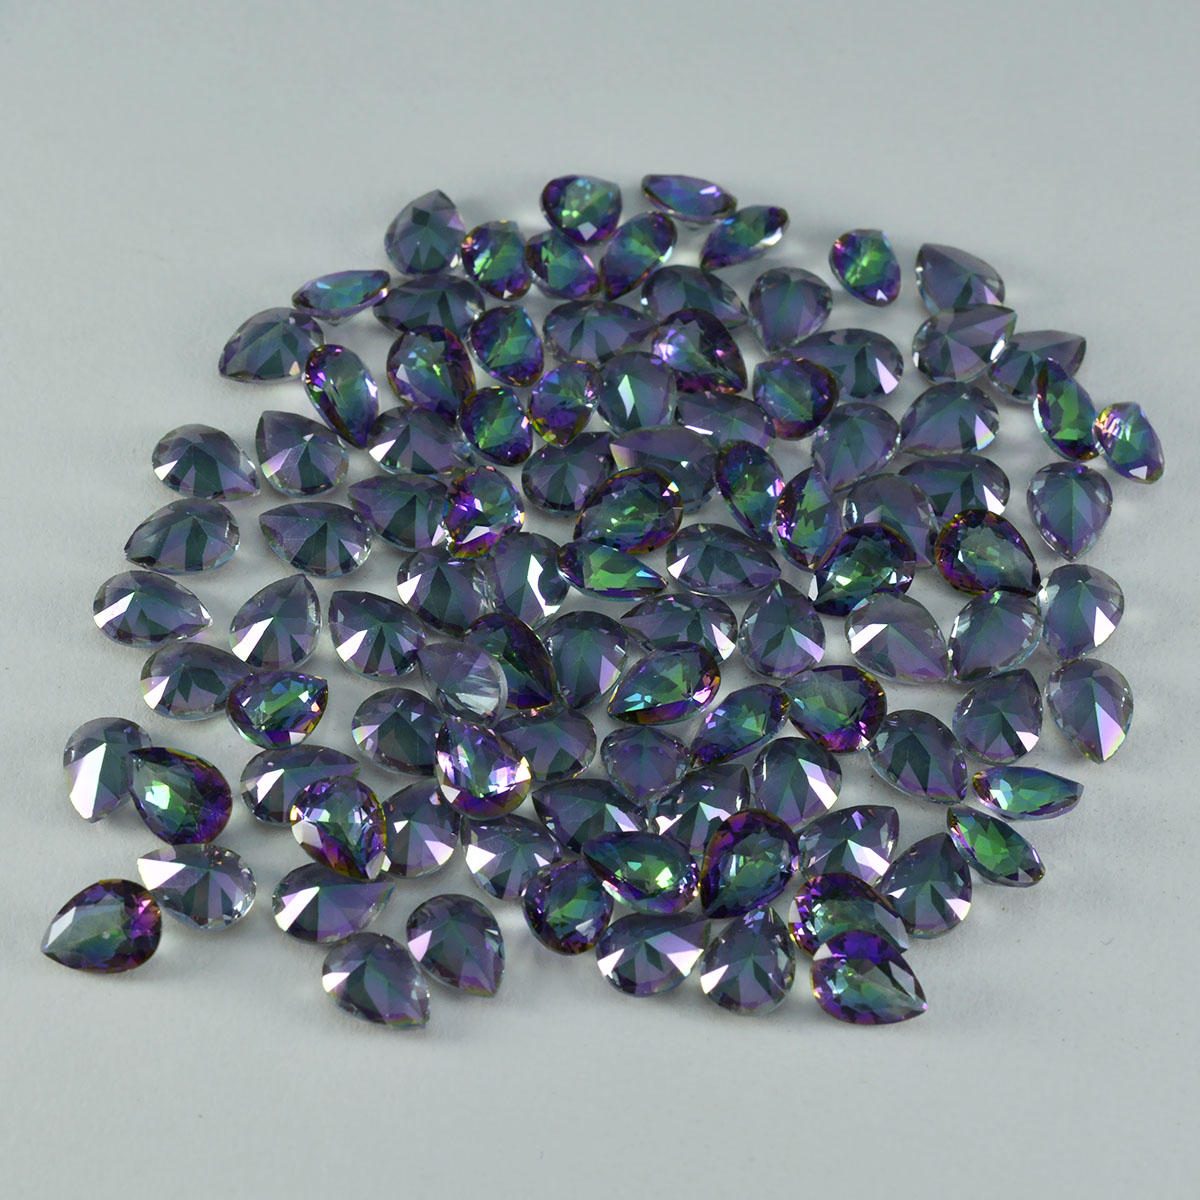 Riyogems 1pc quartz mystique multicolore à facettes 4x6mm forme de poire jolie qualité pierre précieuse en vrac